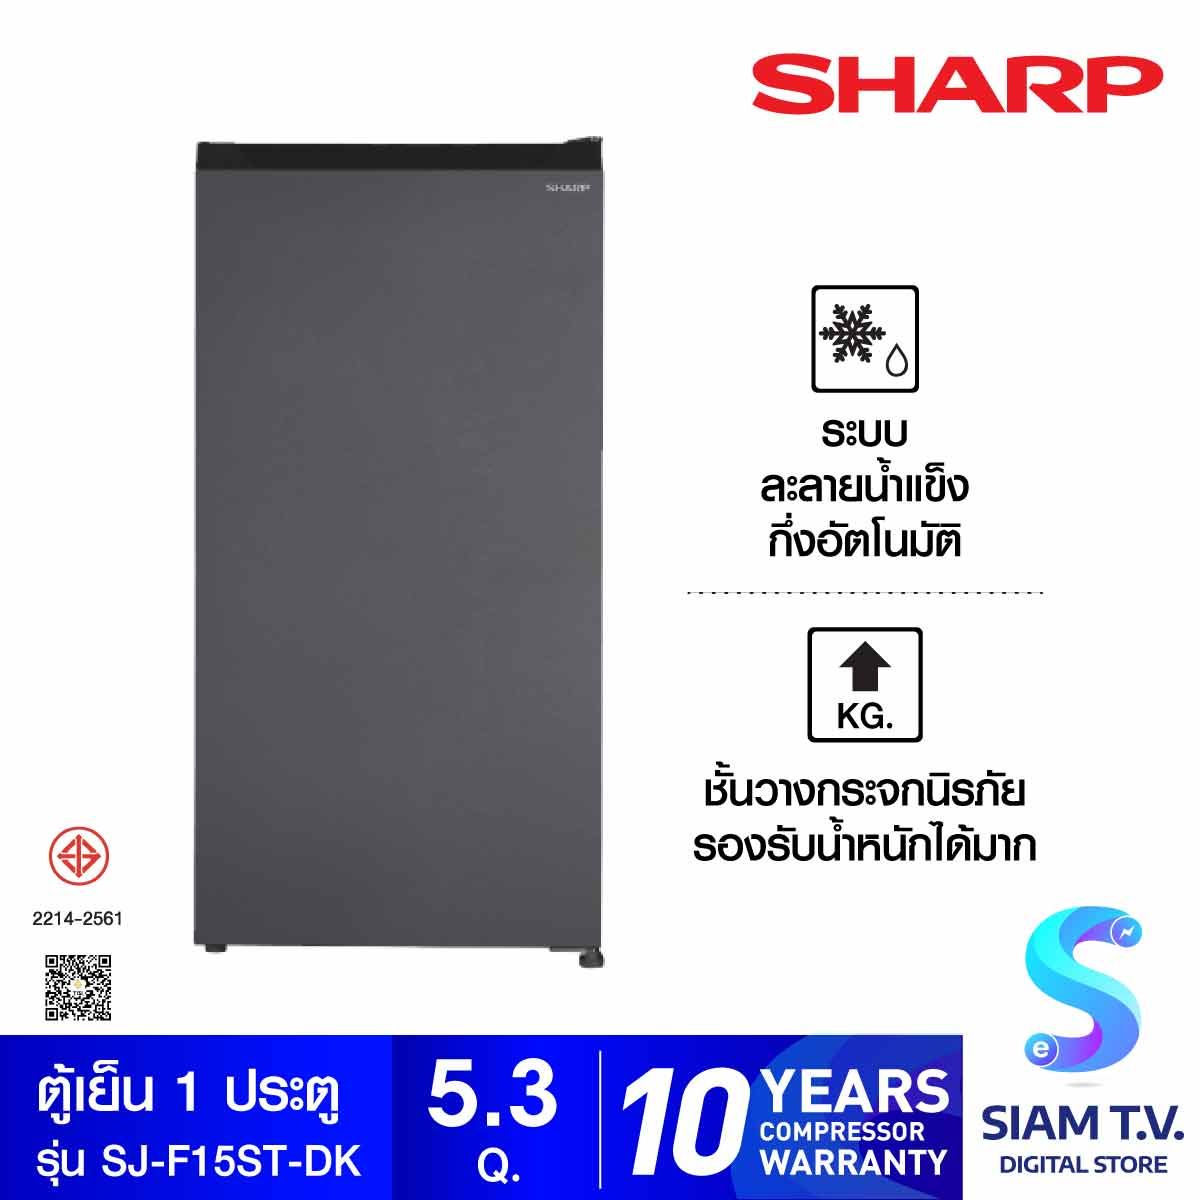 SHARP  ตู้เย็น 1 ประตู 5.3 คิว สีเทาเข้ม รุ่น SJ-F15ST-DK